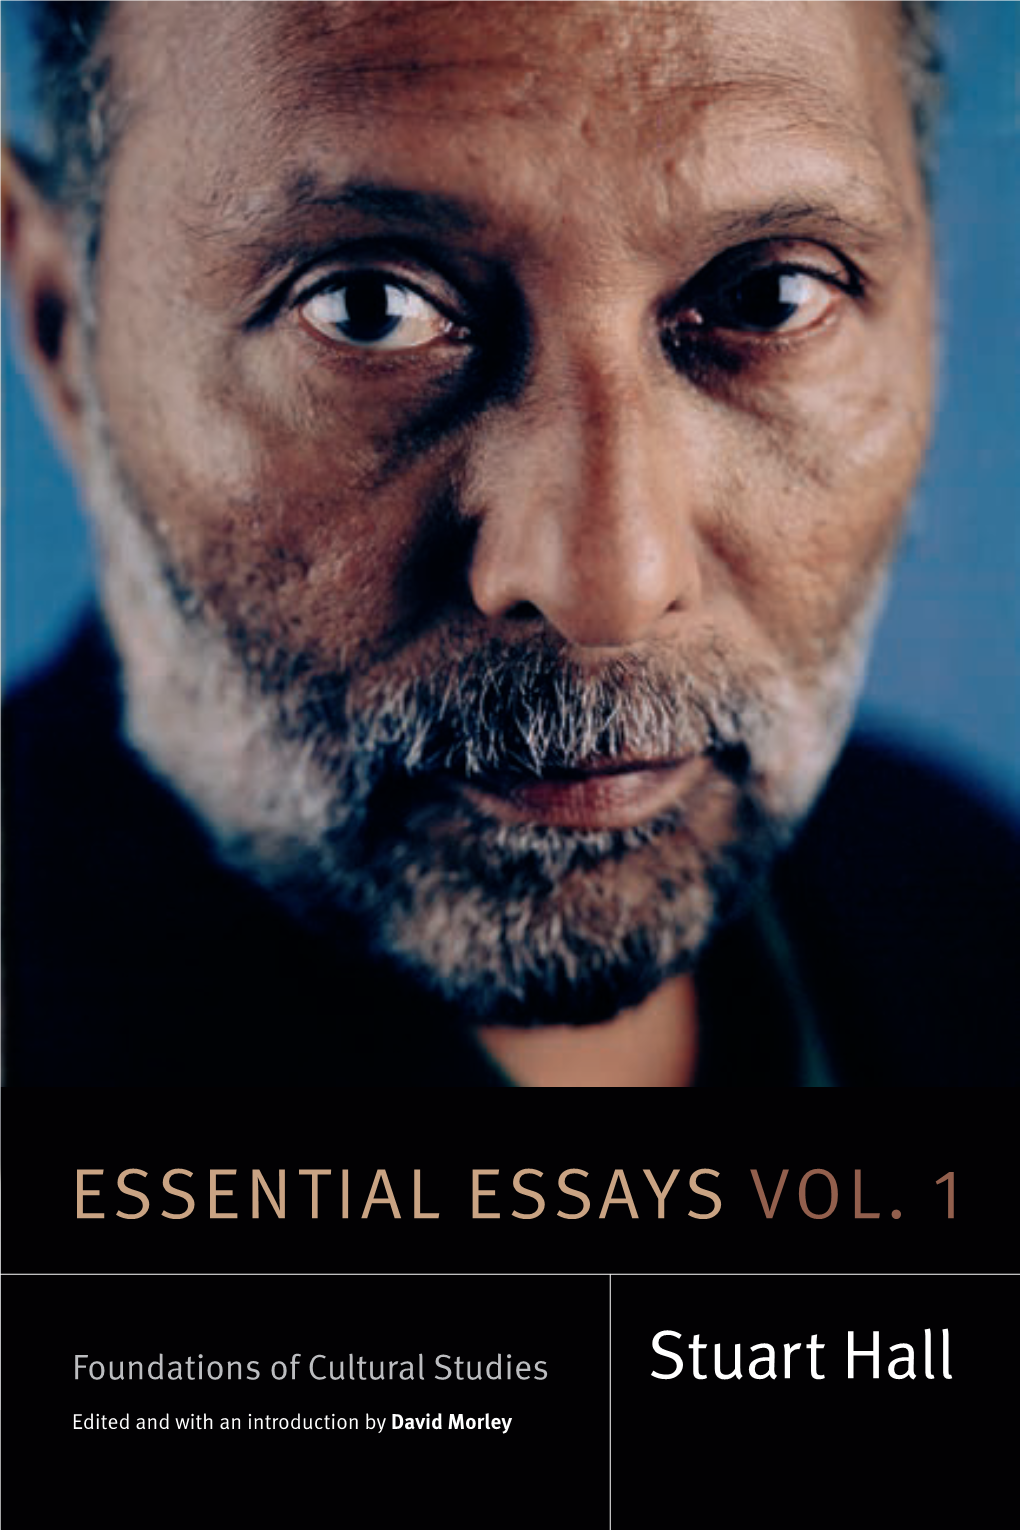 Essential Essays Vol. 1